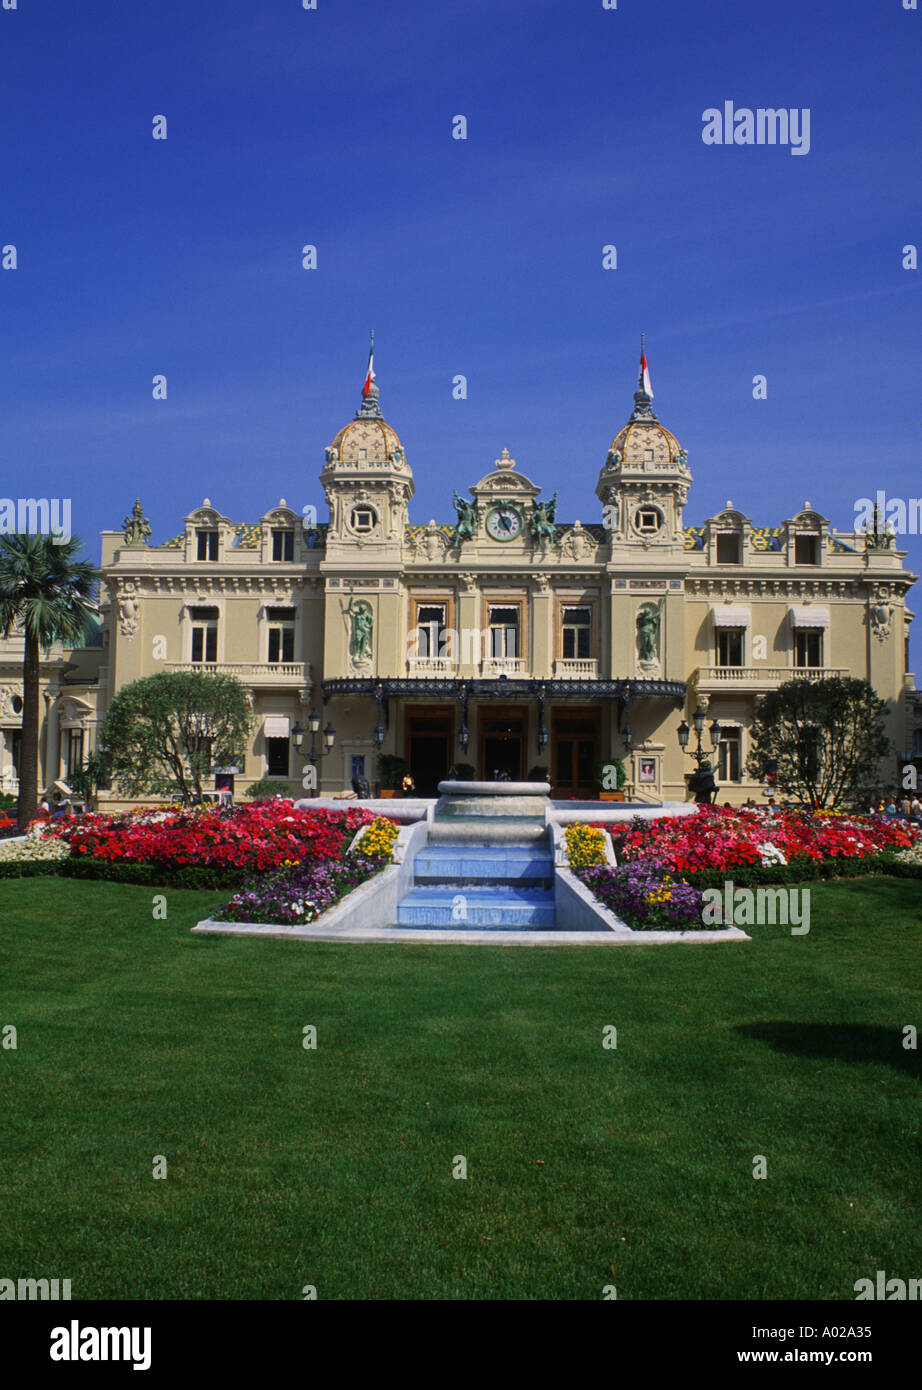 The Good Life Monte Carlo casino in Monaco Stock Photo